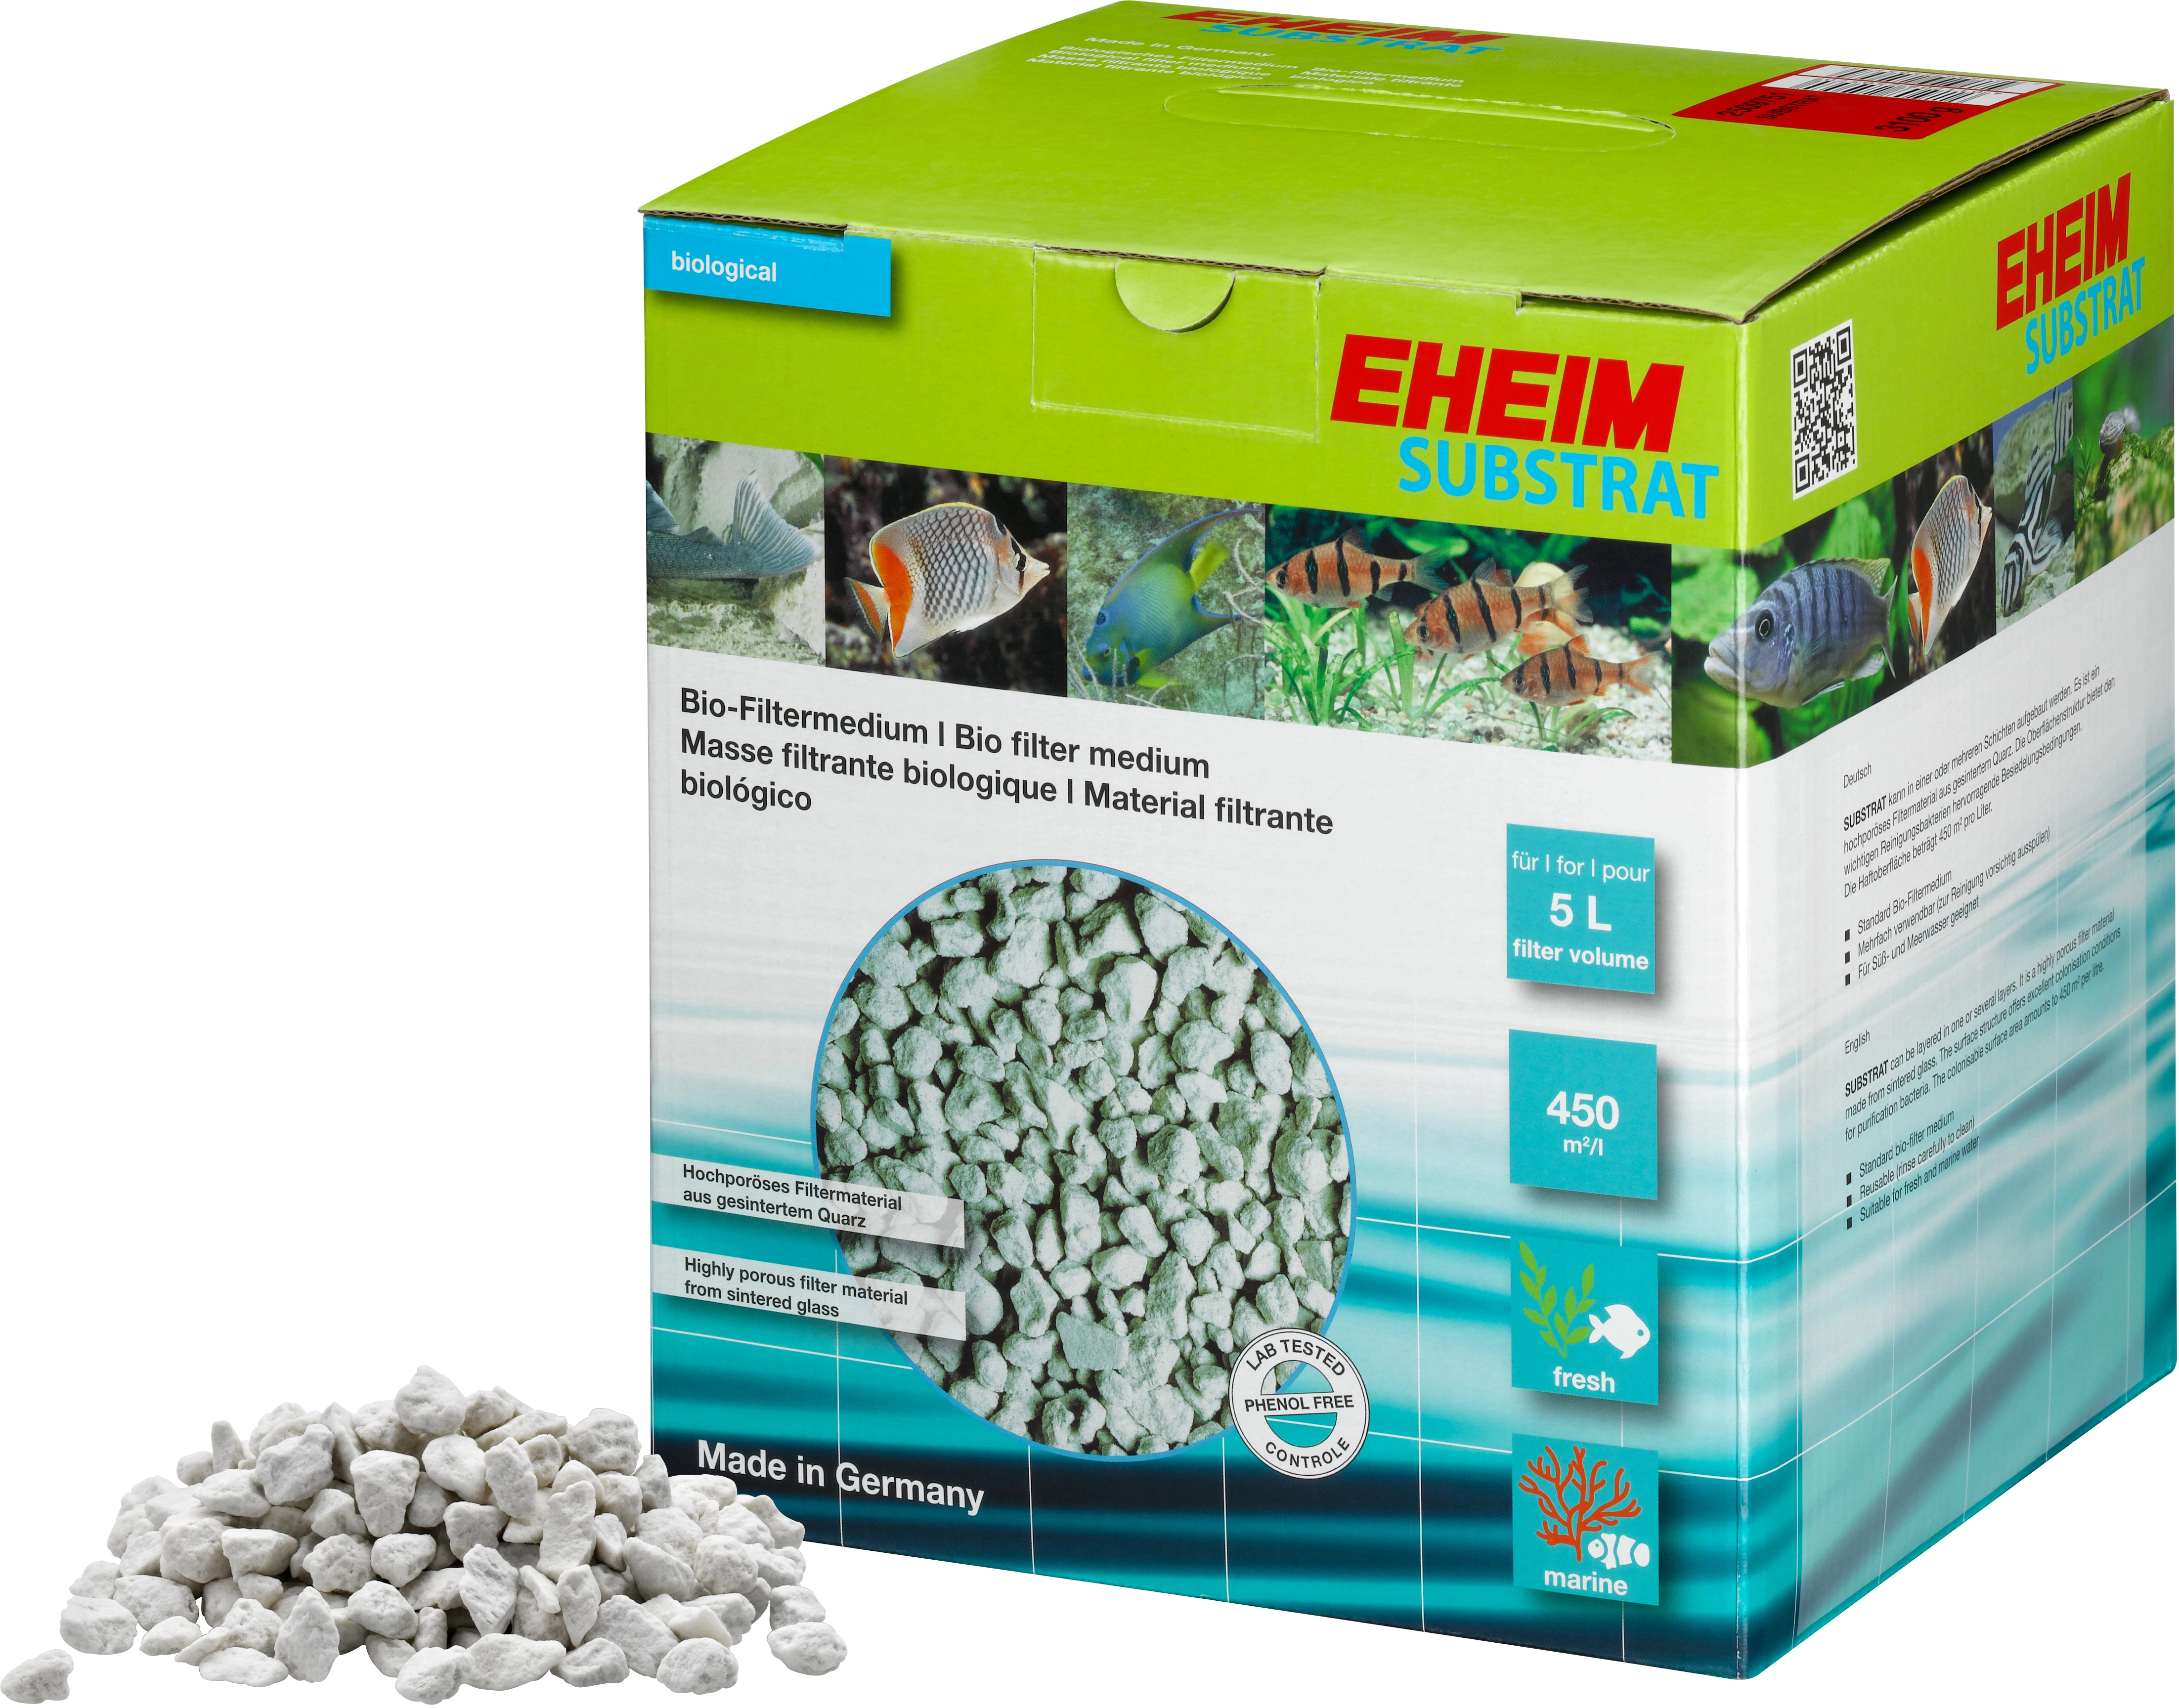 Eheim Bio-Filtermedium Substrat 3,1 kg für Aquarien kaufen bei OBI